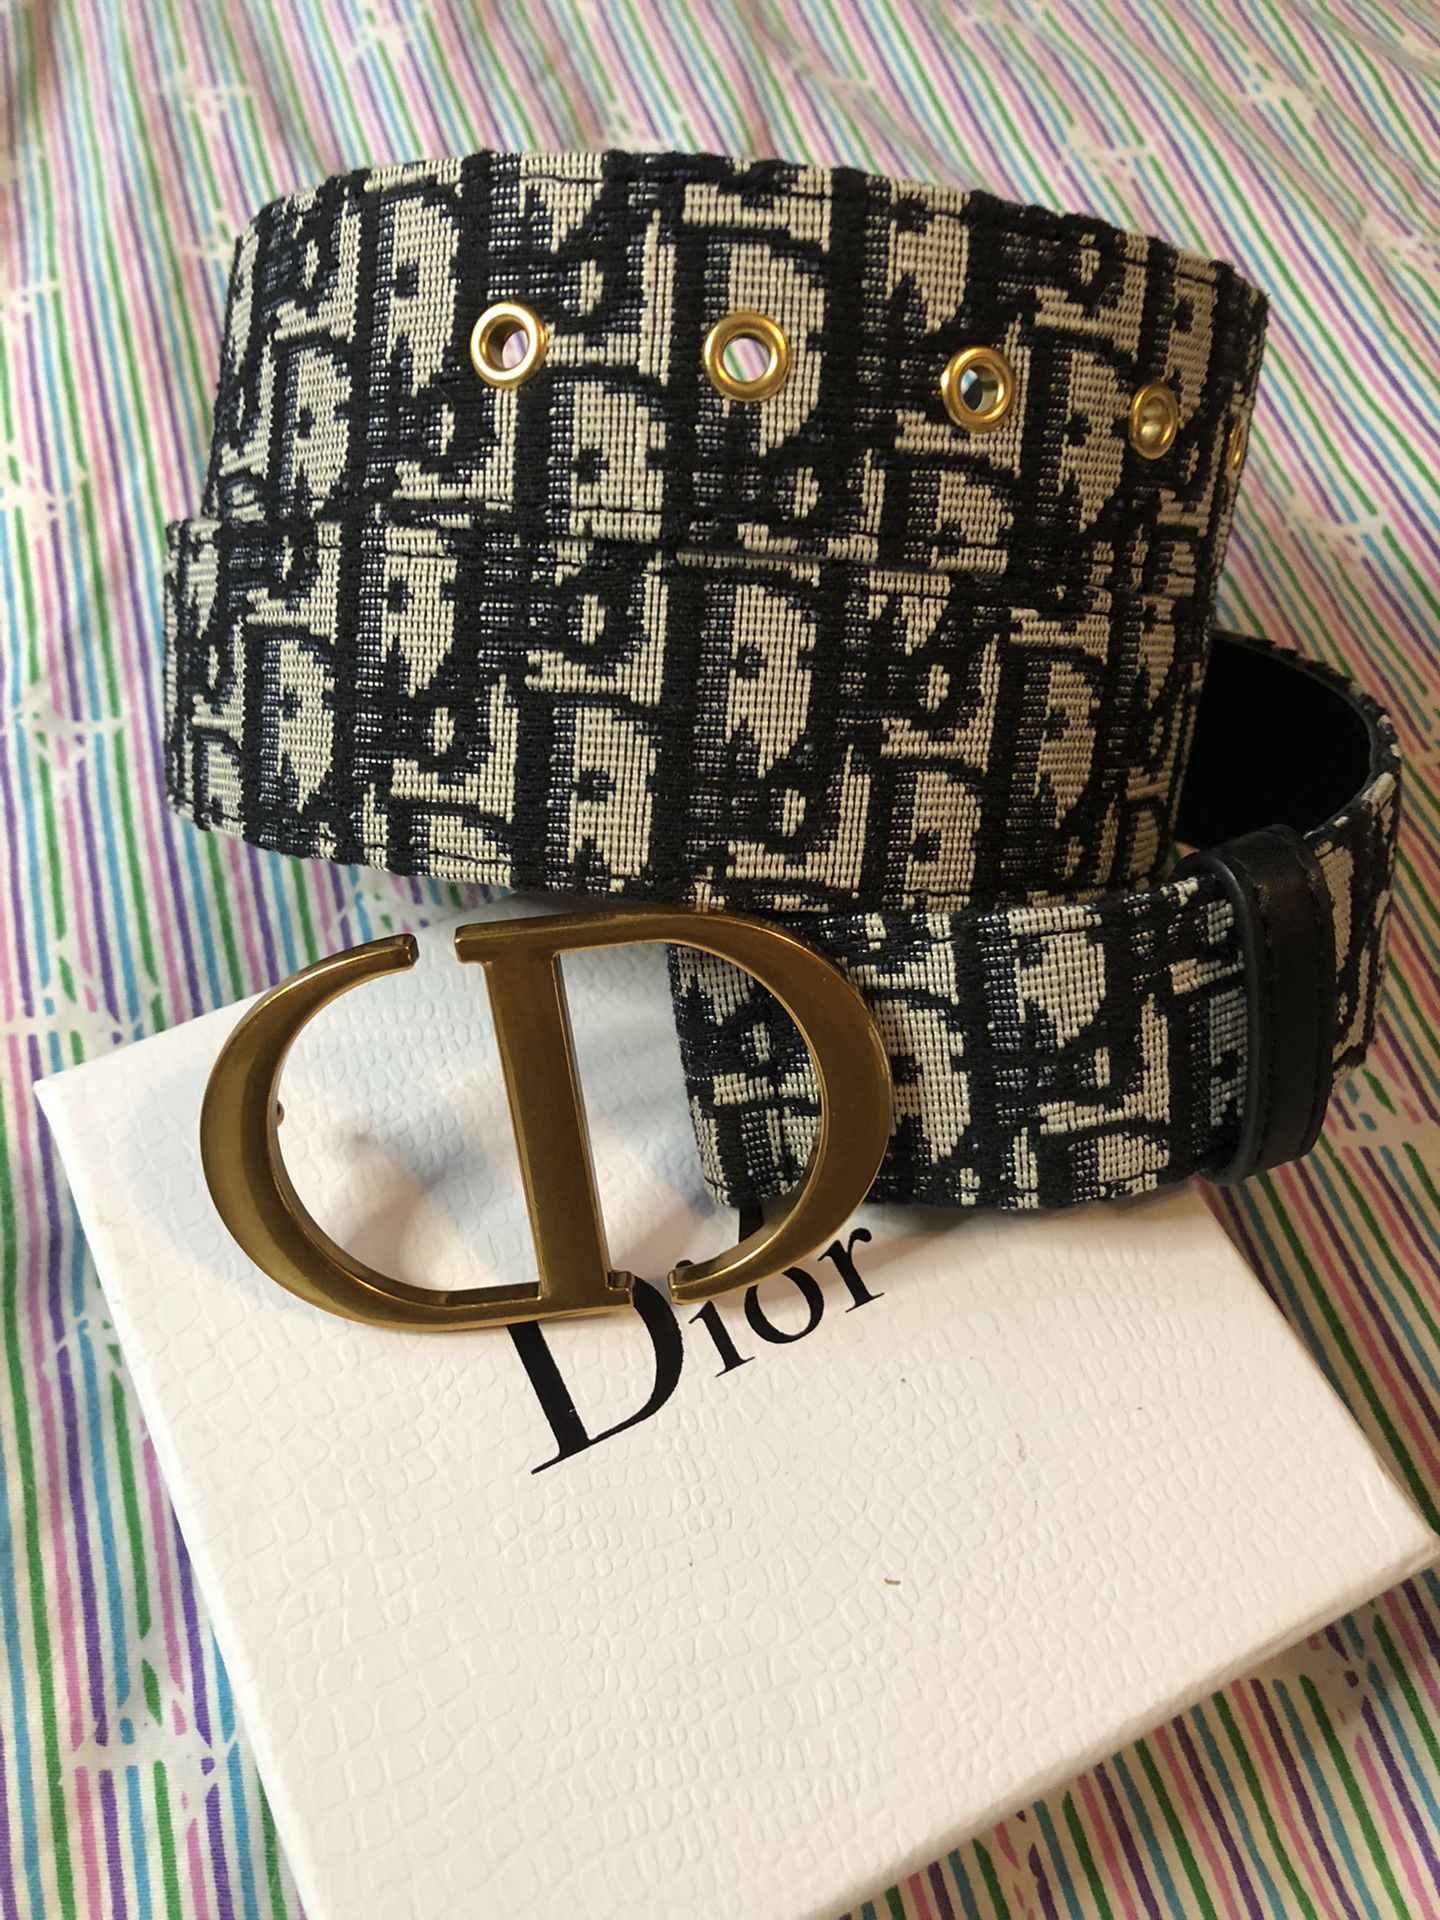 Dior Belt